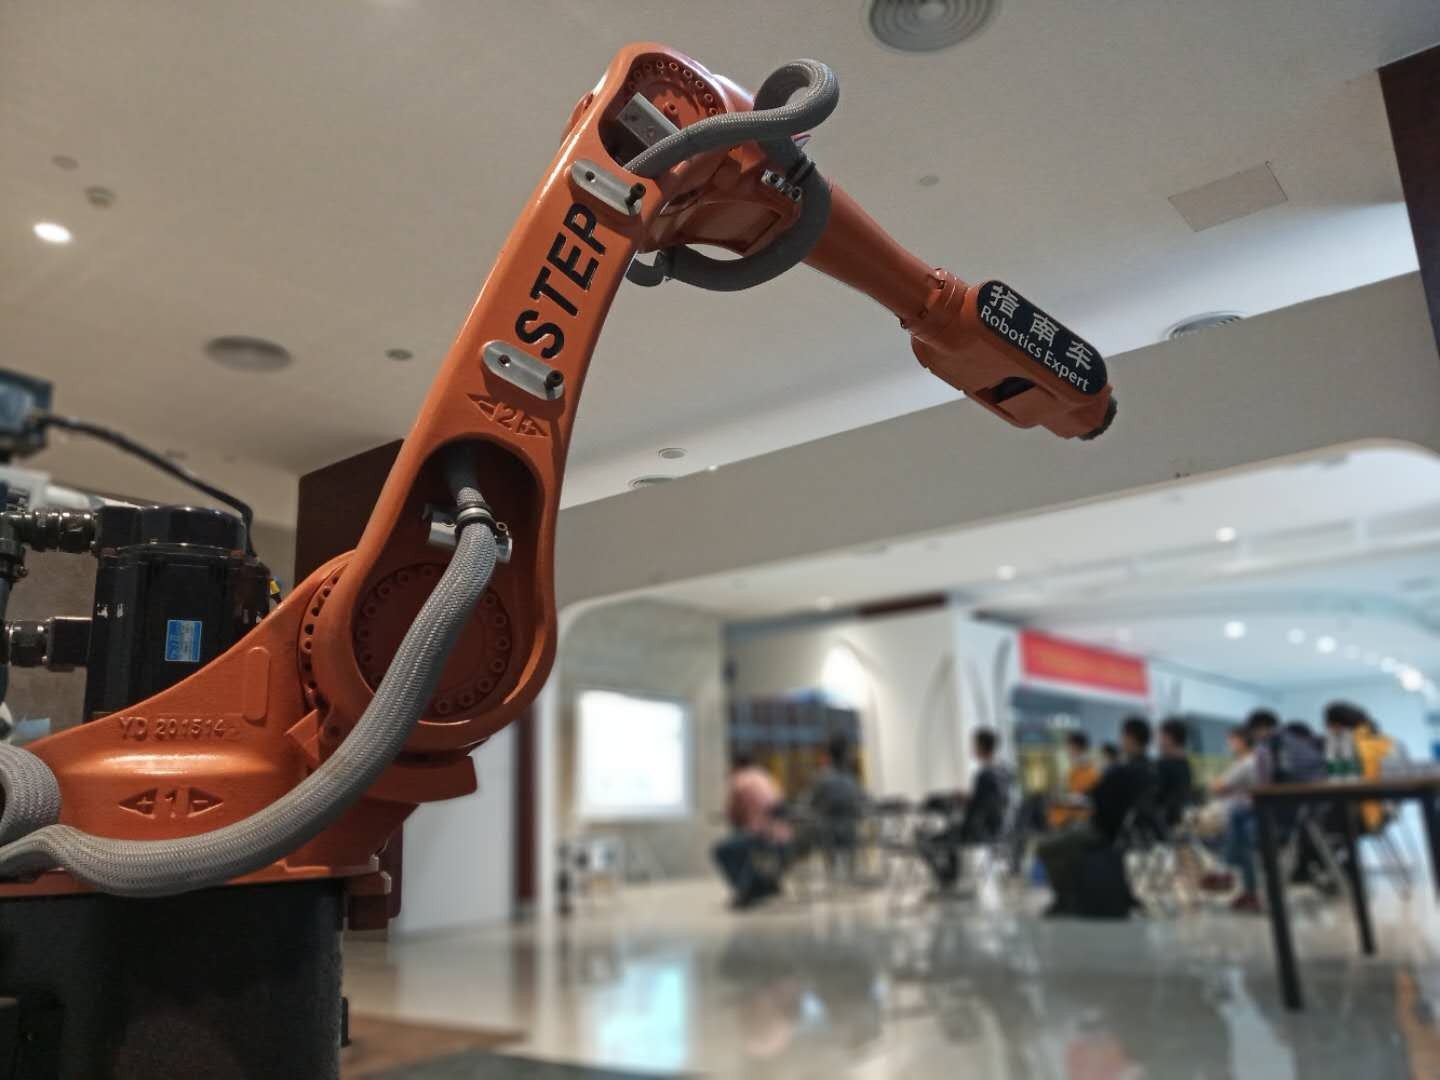 上海工业机器人培训